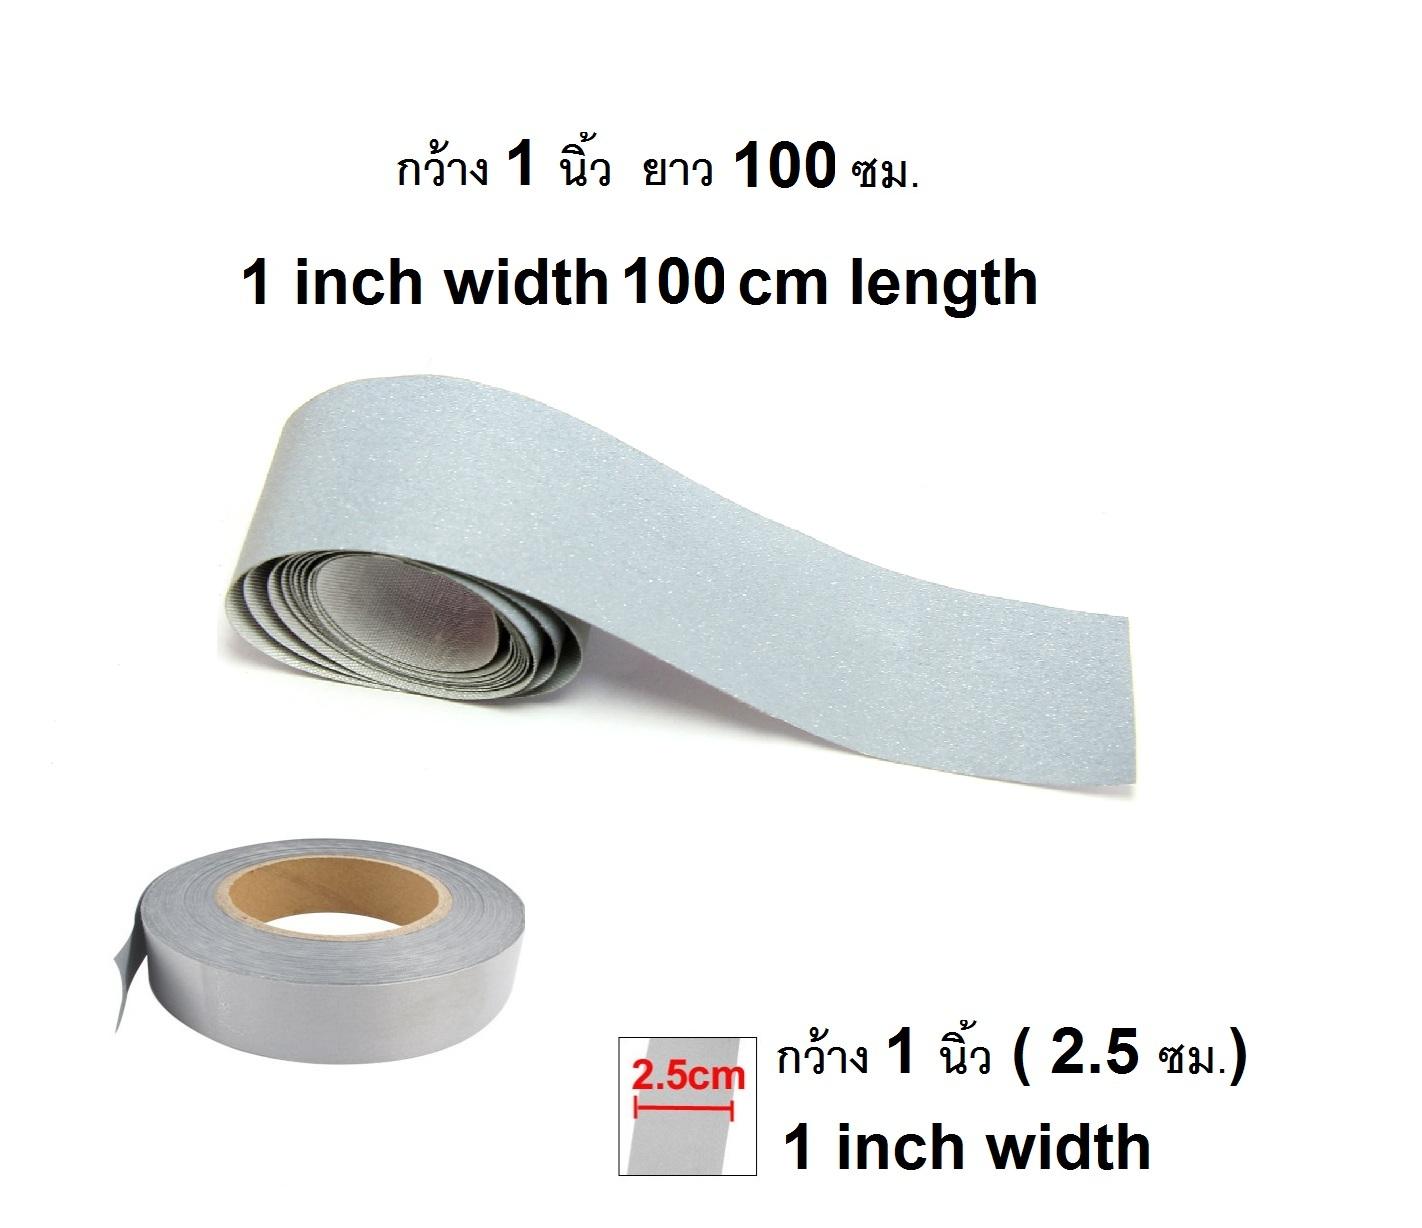 แถบสะท้อนแสง เทปสะท้อนแสง แถบผ้าสะท้อนแสง สีเทา หน้ากว้าง 1 นิ้ว  ยาว 100  ซม. แบบไม่มีเทปกาวที่ด้านหลัง   Fabric Gray Reflective Safety Security Strip For Sew-on only 1